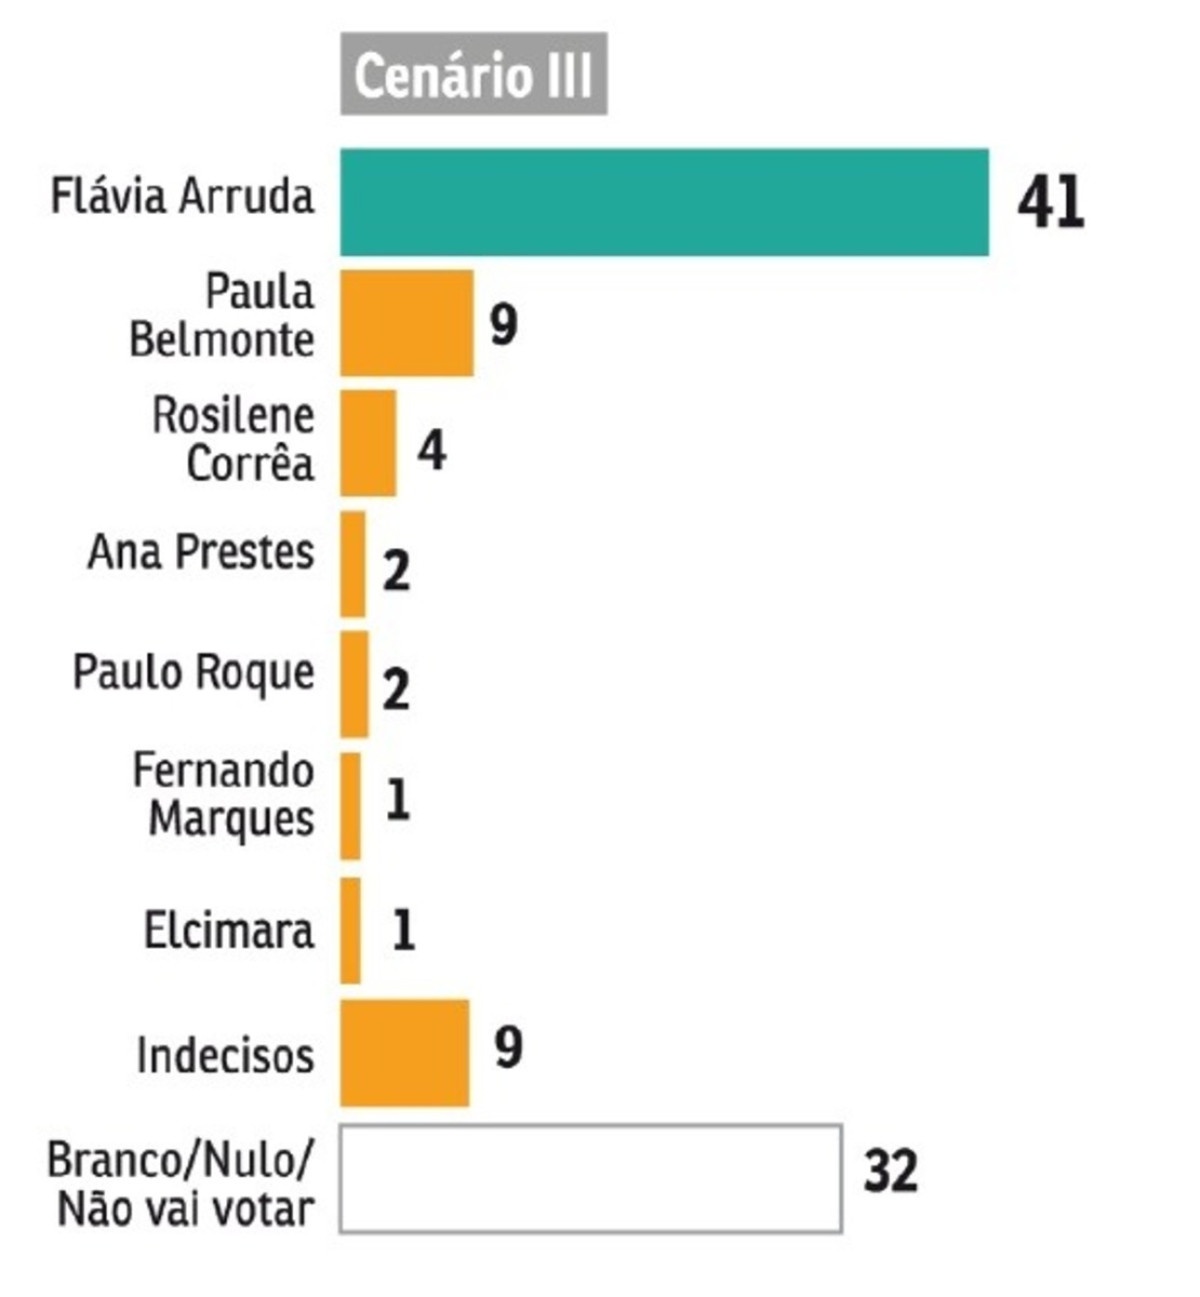 Flávia Arruda lidera com 41% dos votos neste cenário